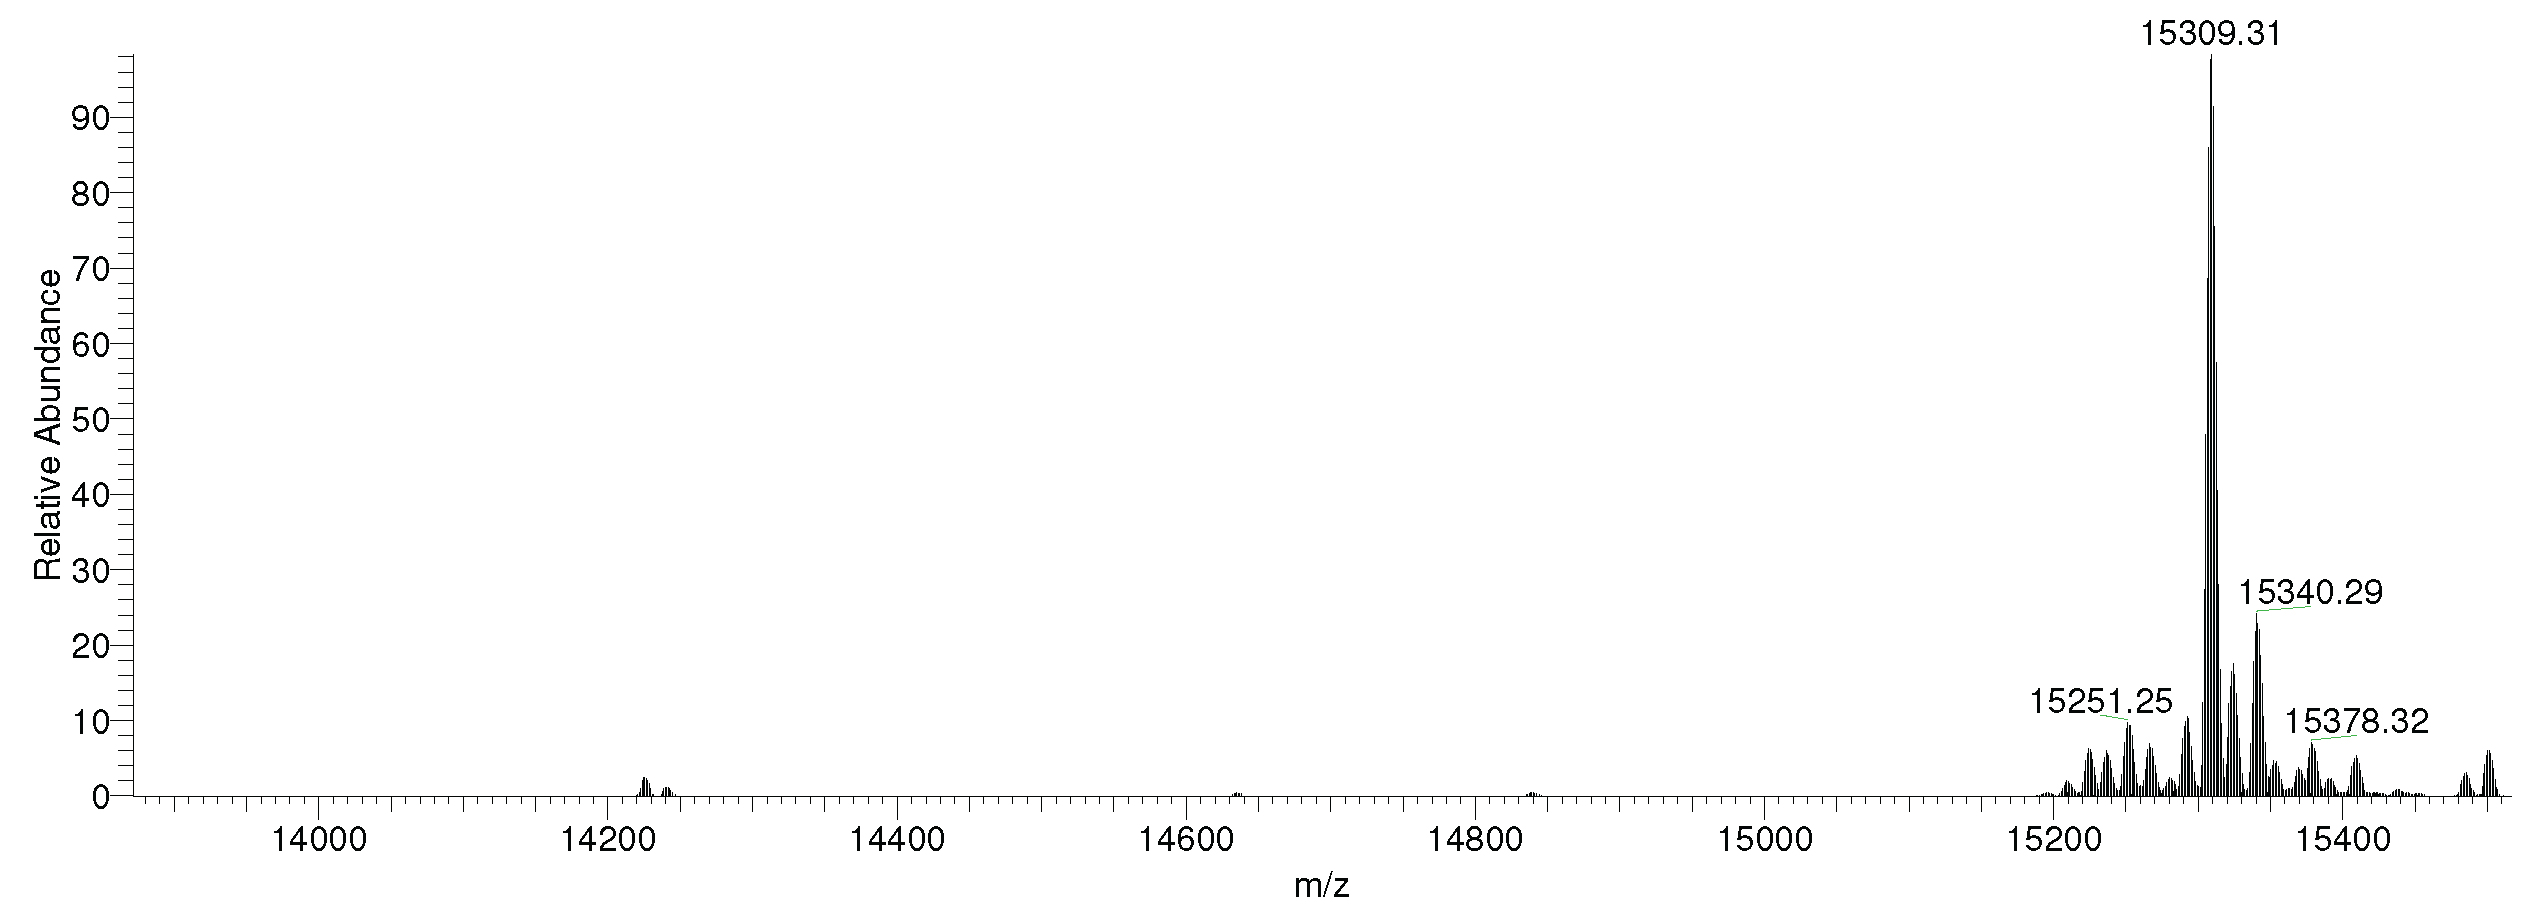 16-0402-mass-spec-data